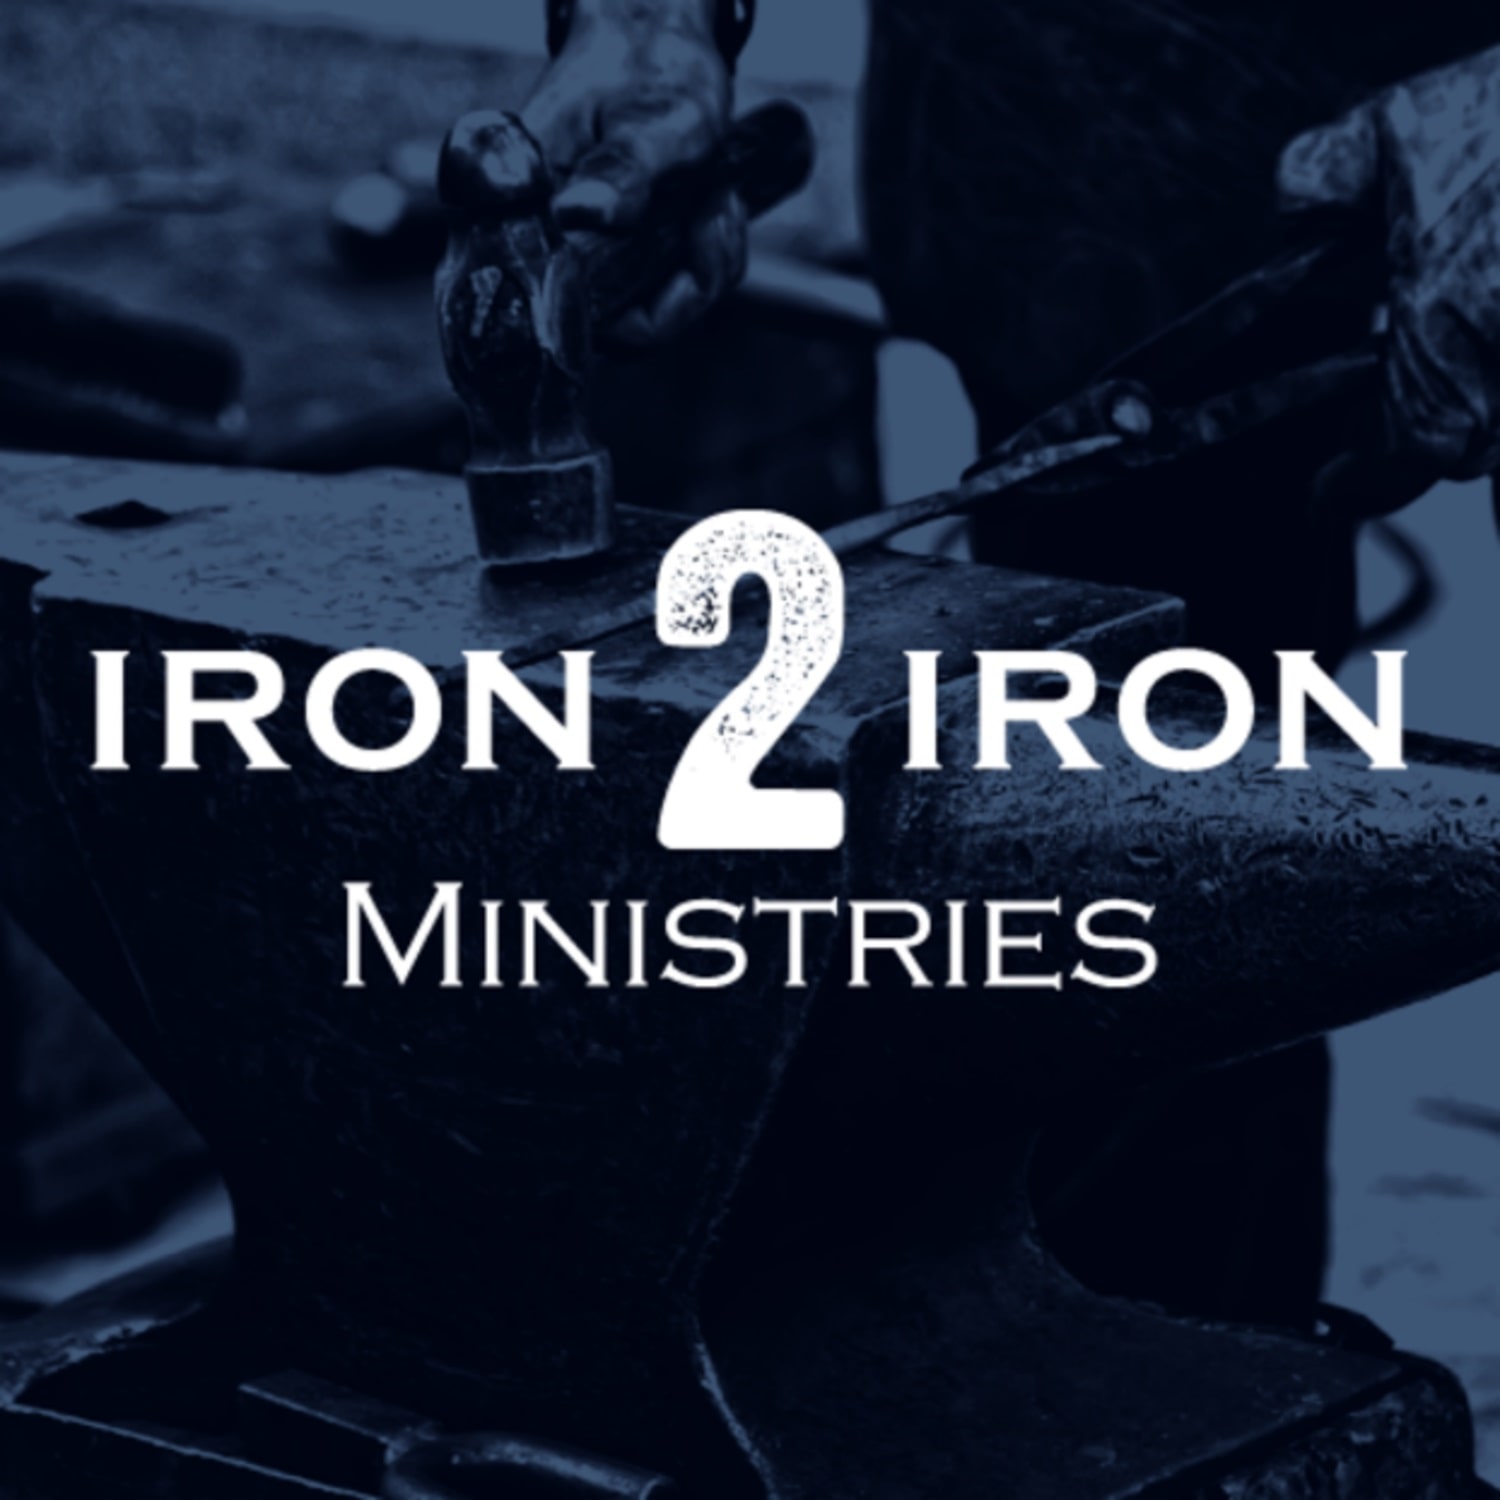 Iron 2 Iron Ministries